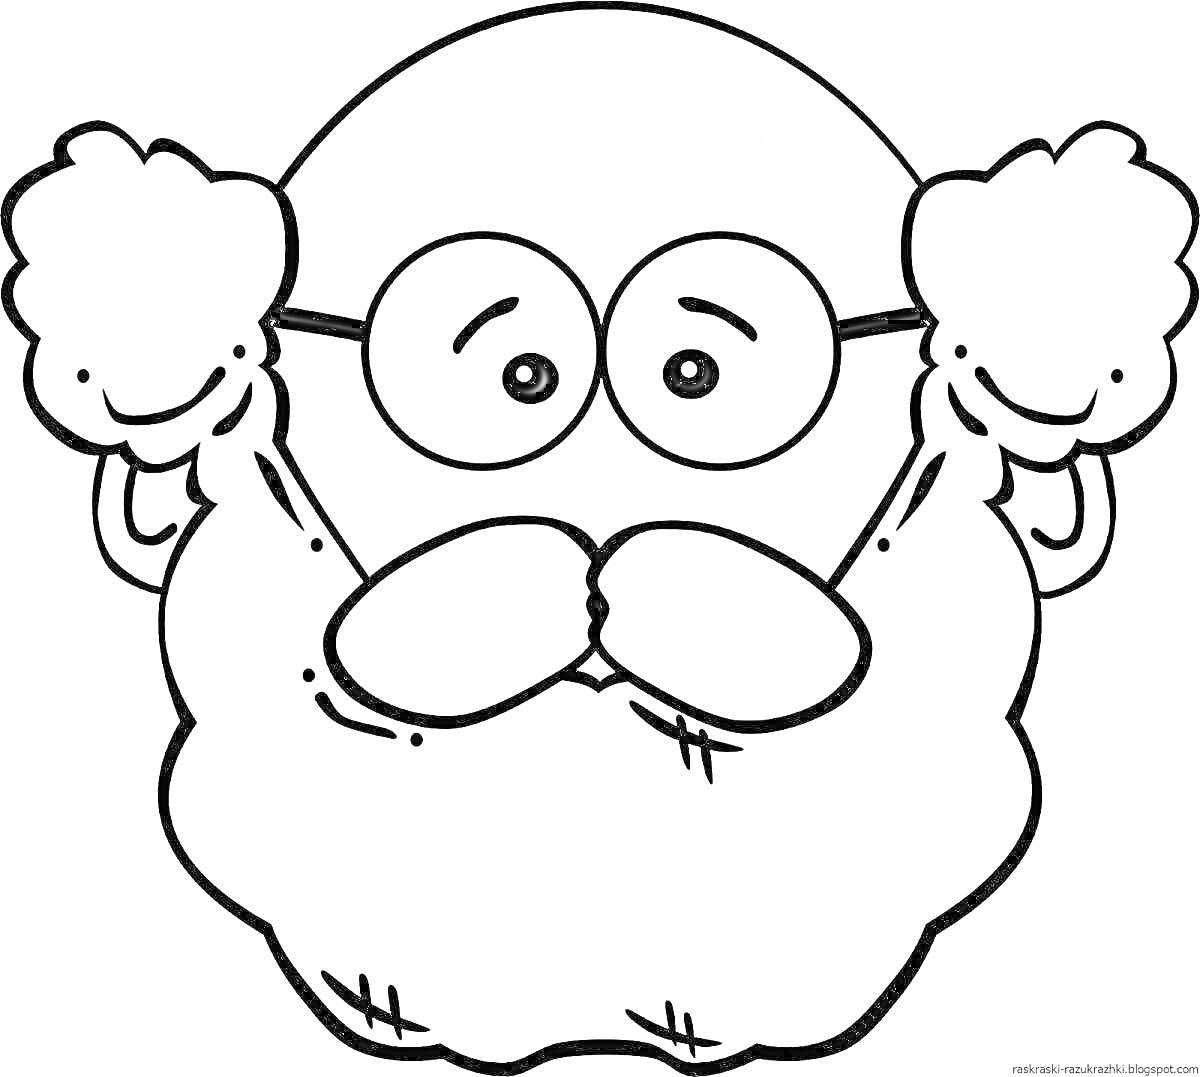 Раскраска Интересное лицо с бородой и очками, поднятые вверх кисти рук